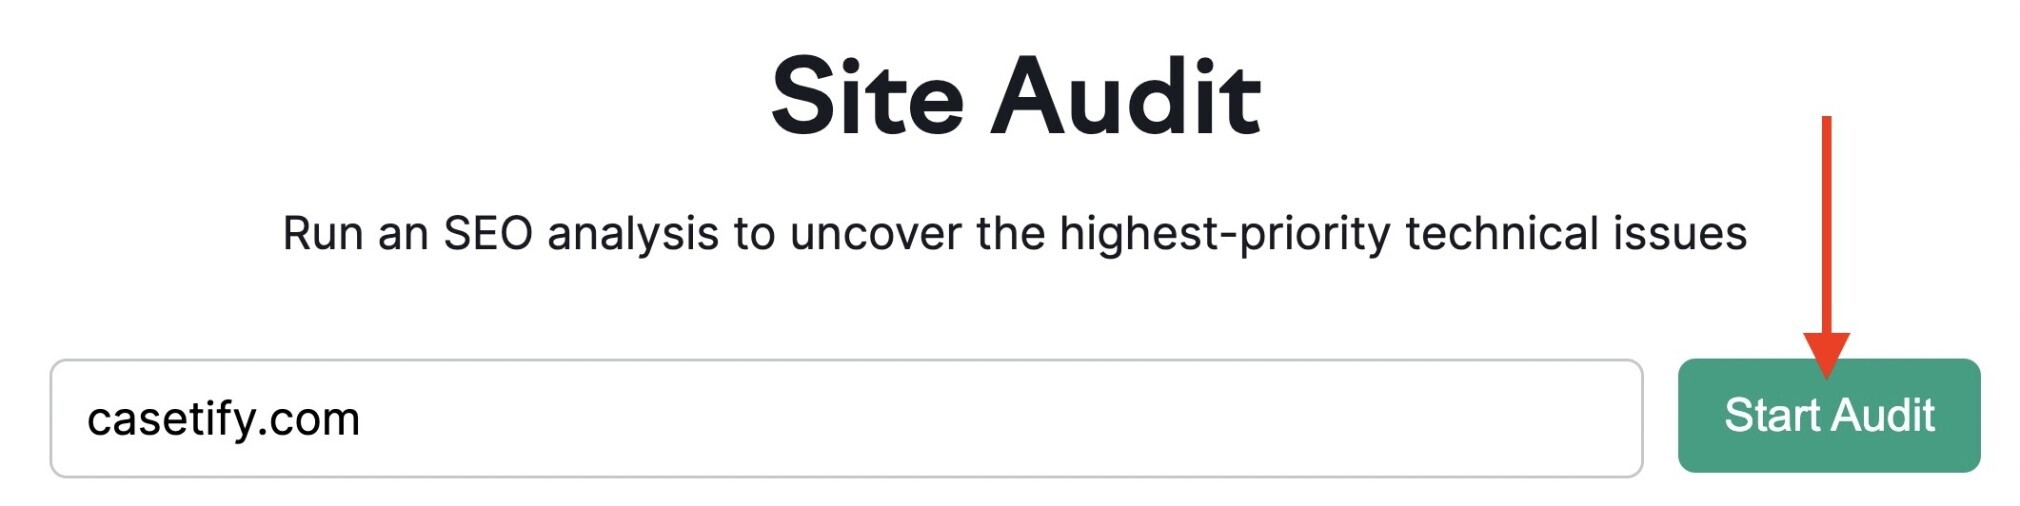 site audit tool